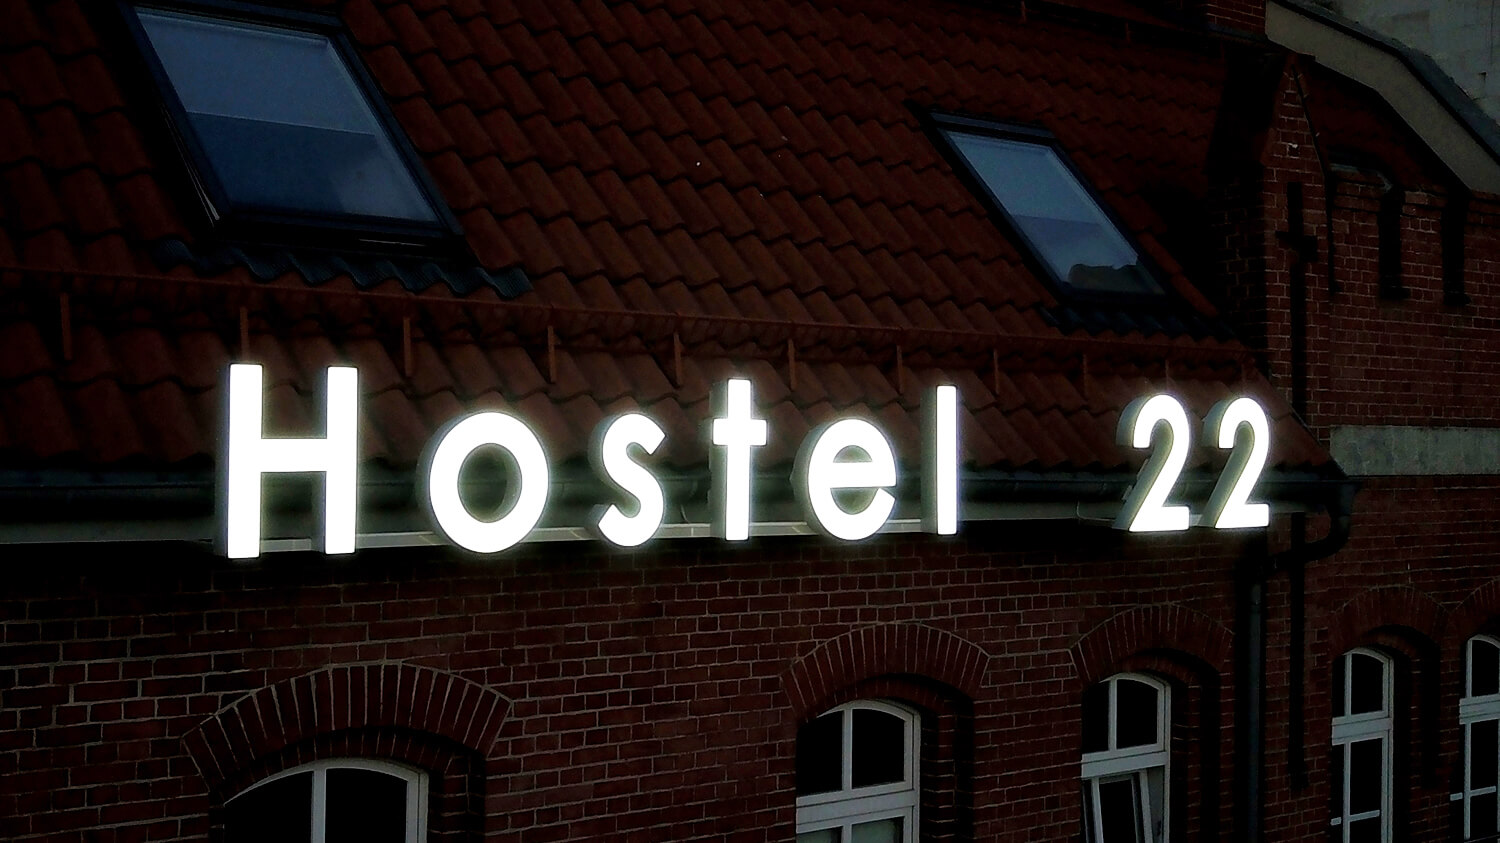 Ostello 22 - Hostel 22 - lettere spaziali leggere poste sul muro